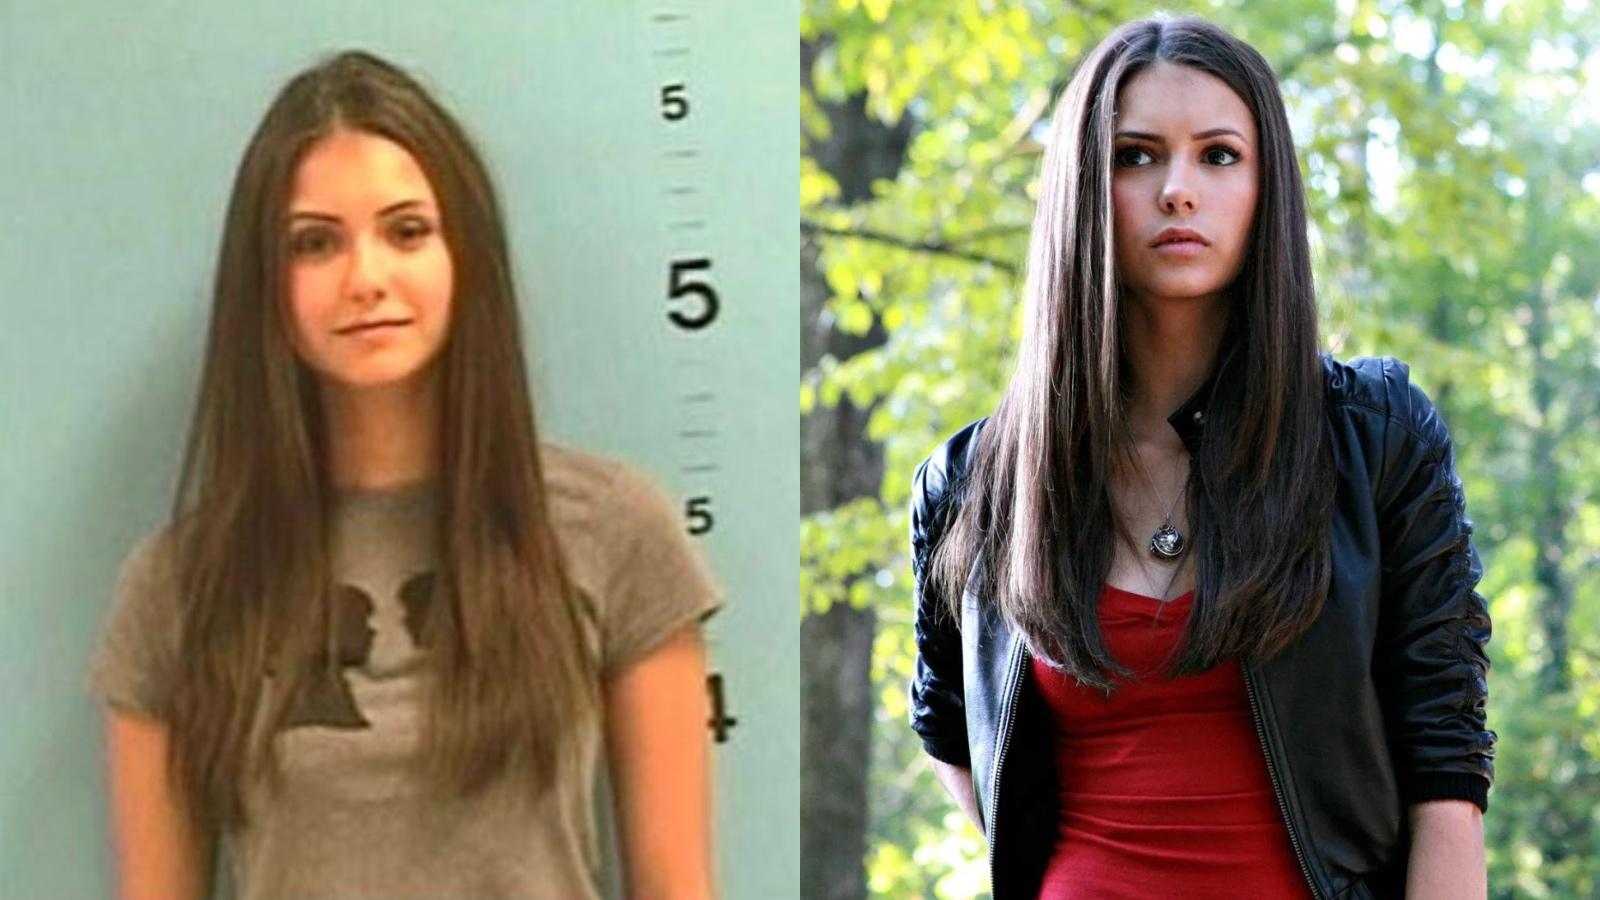 Nina Dobrev played Elena in The Vampire Diaries